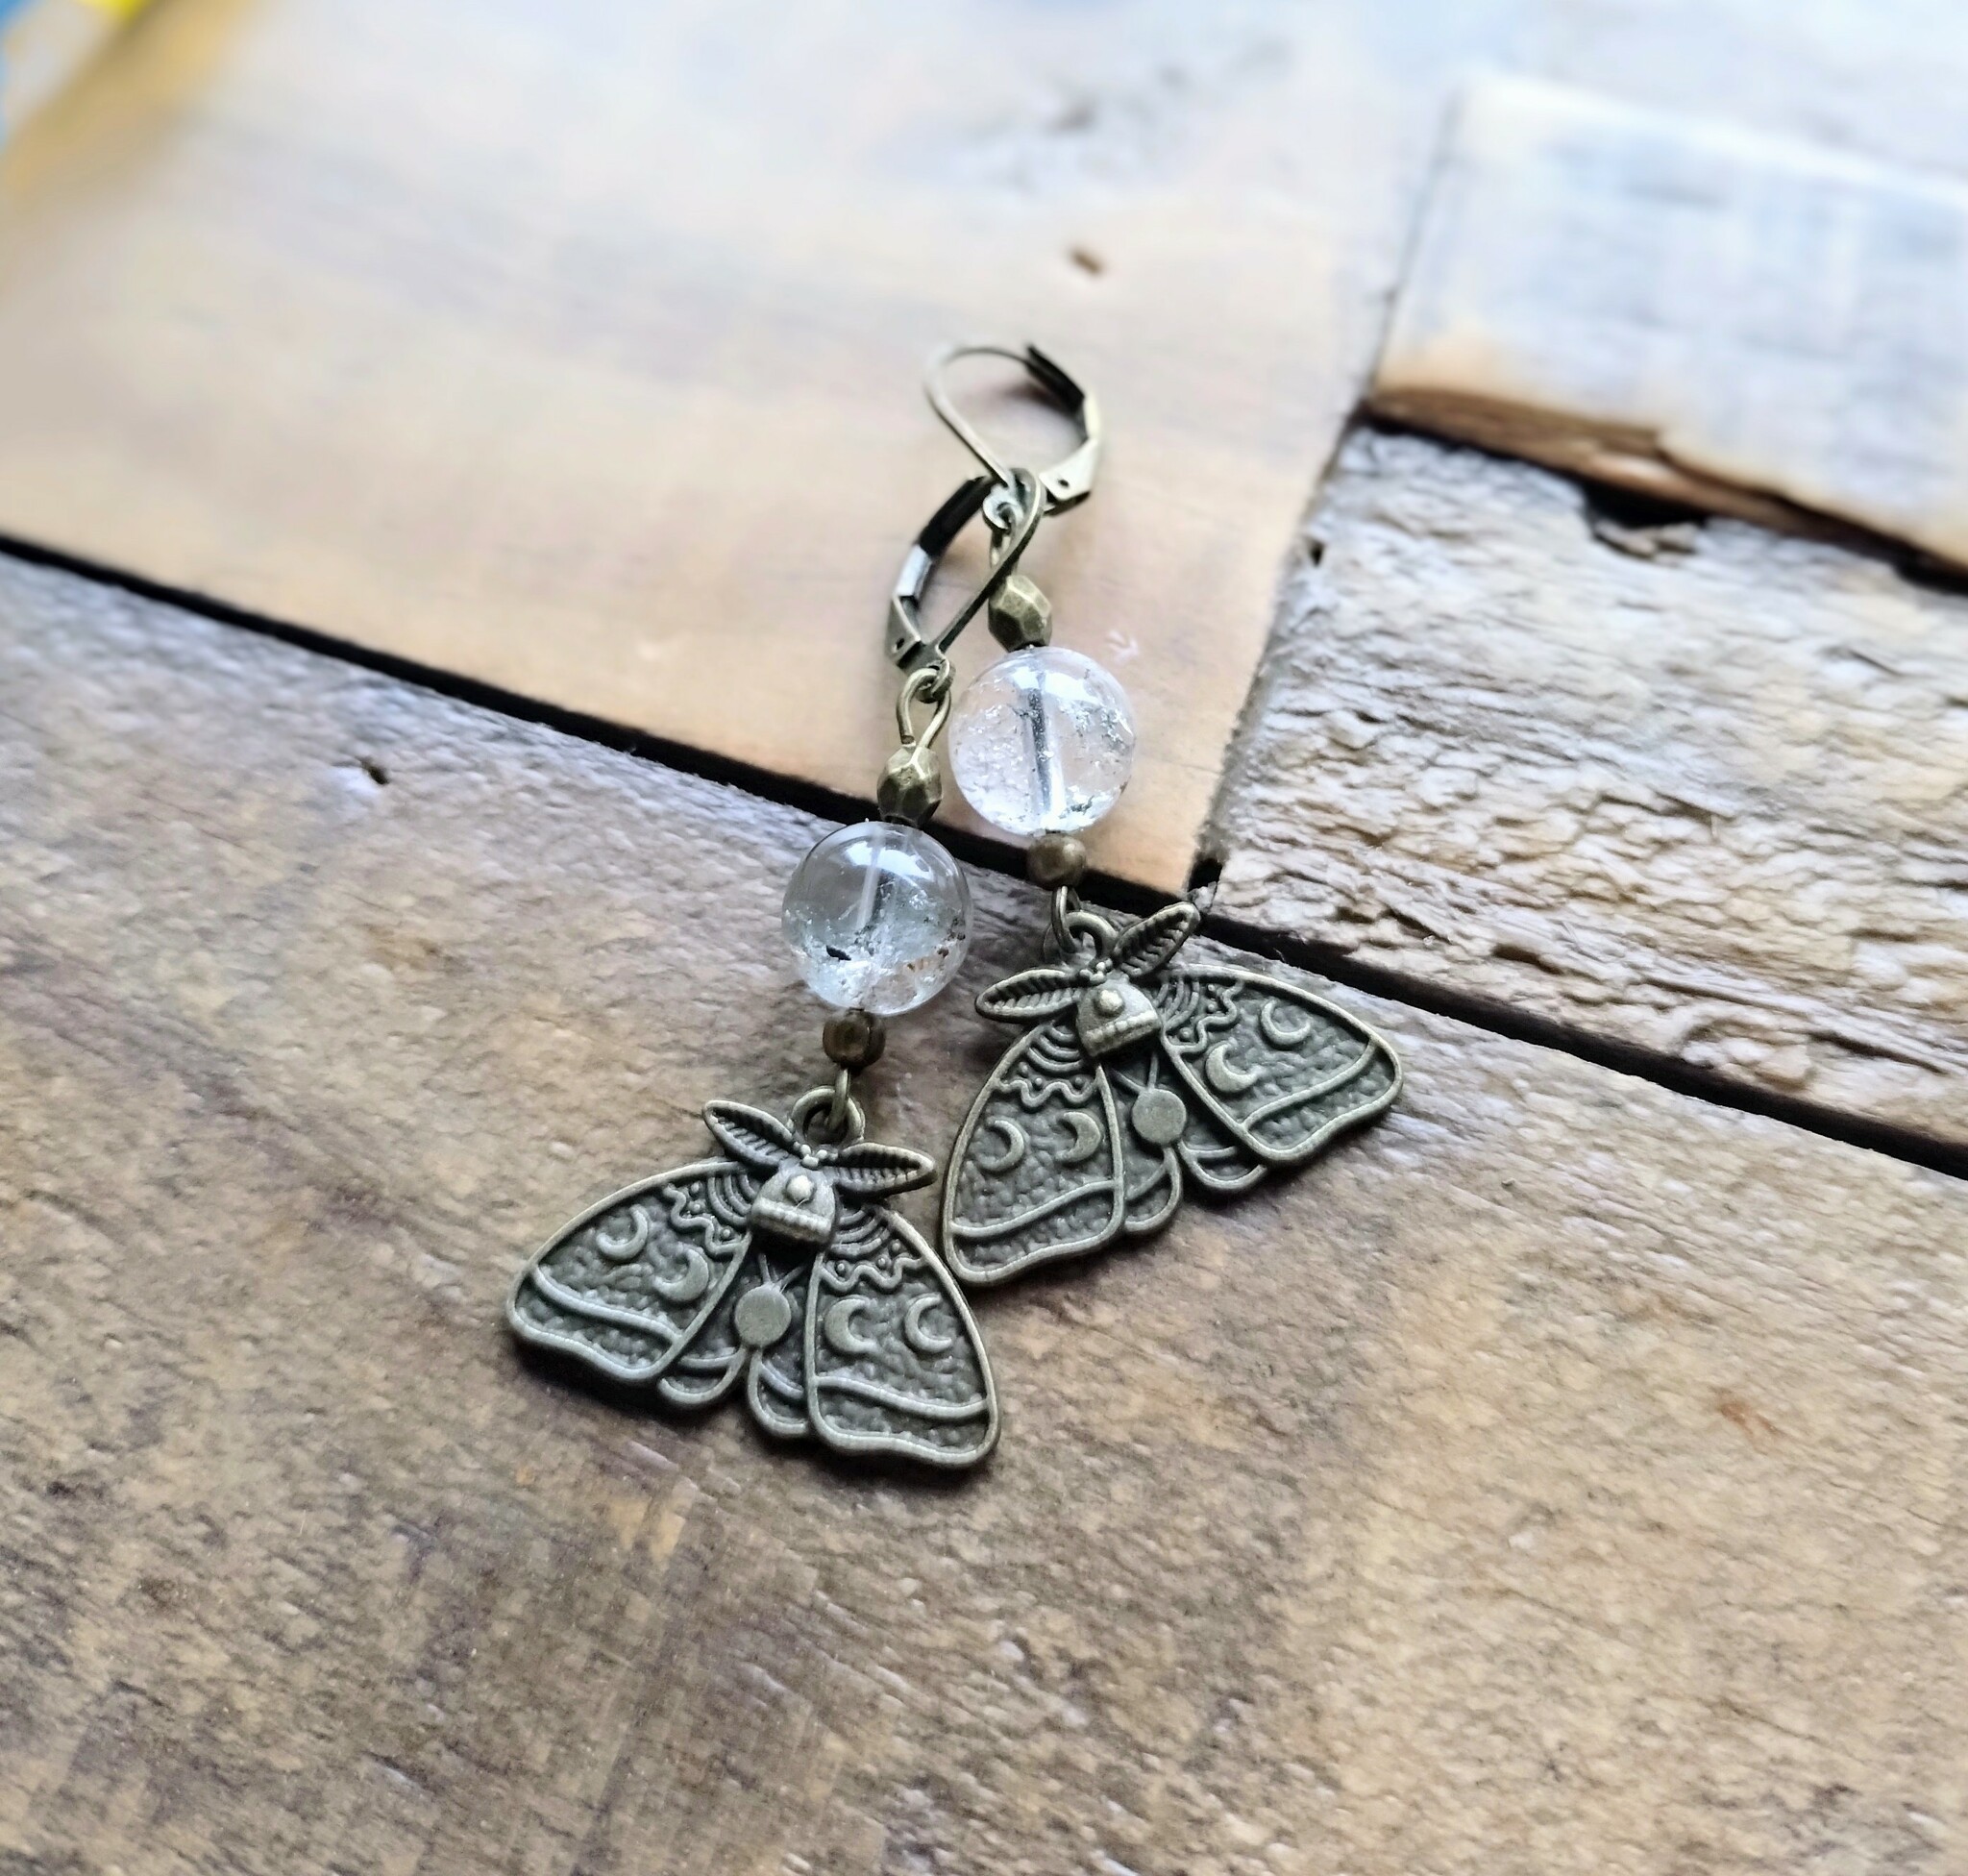 Luna Moth örhängen med Trädgårdskvarts och antikt bronsfärgade detaljer